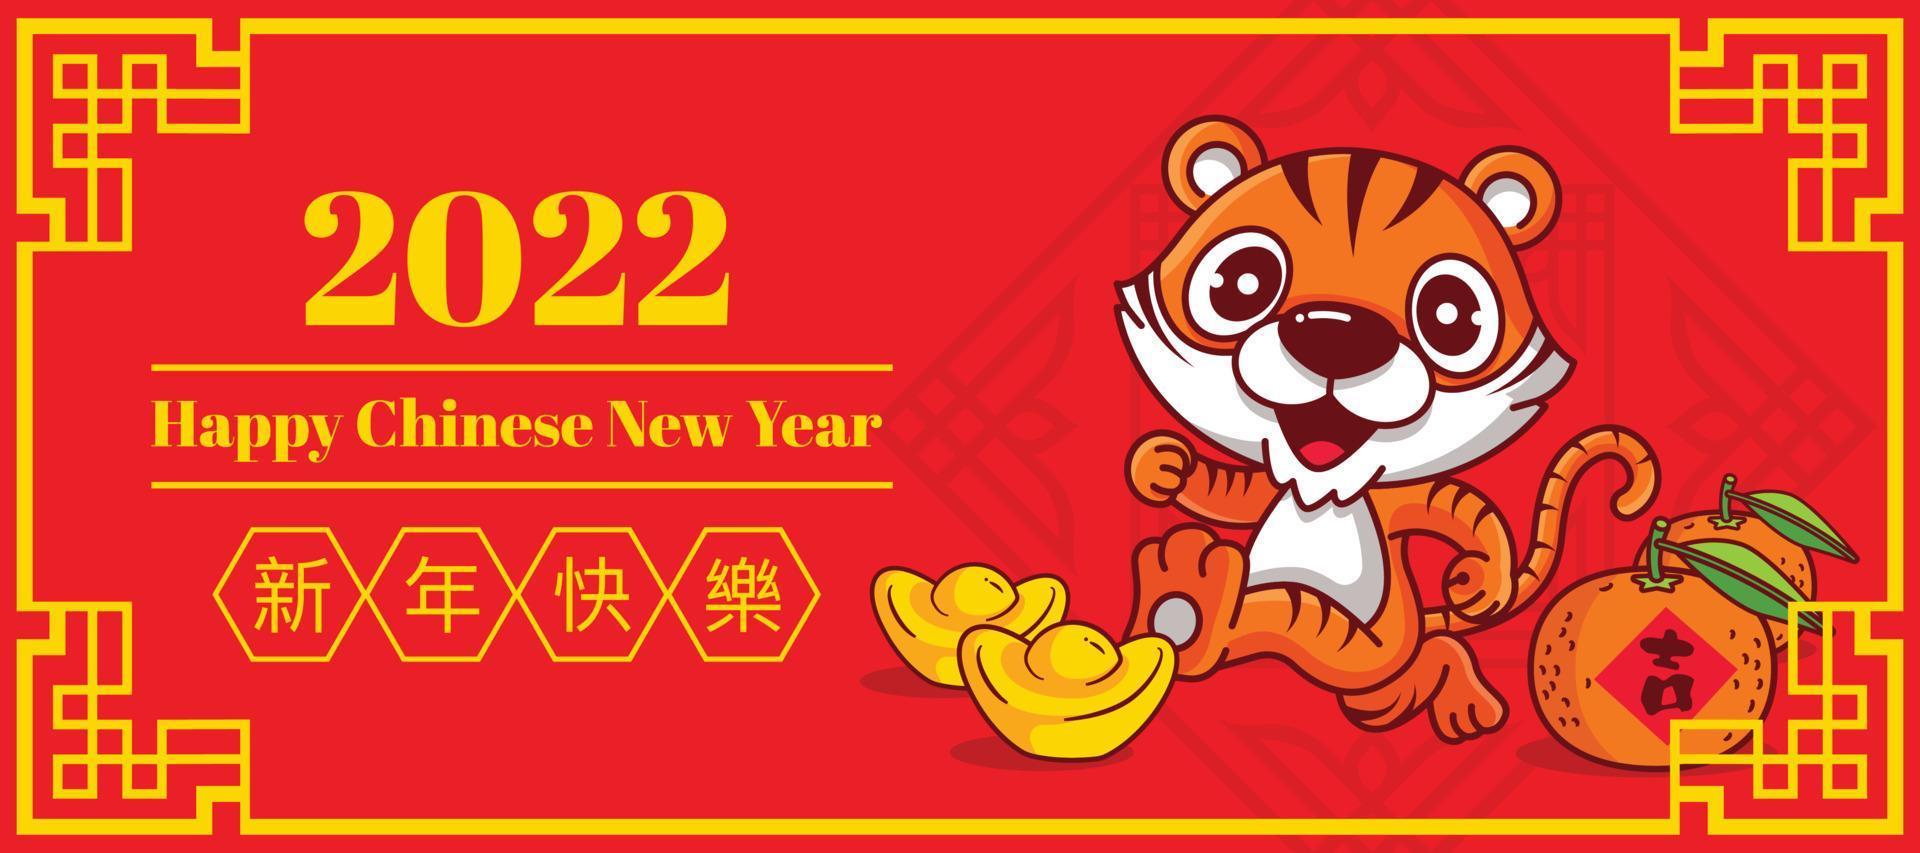 2022 tarjeta de felicitación de feliz año nuevo chino. tigre lindo de dibujos animados corriendo felizmente. lingote de oro y mandarina en el piso con deseos del año nuevo chino 2022 vector